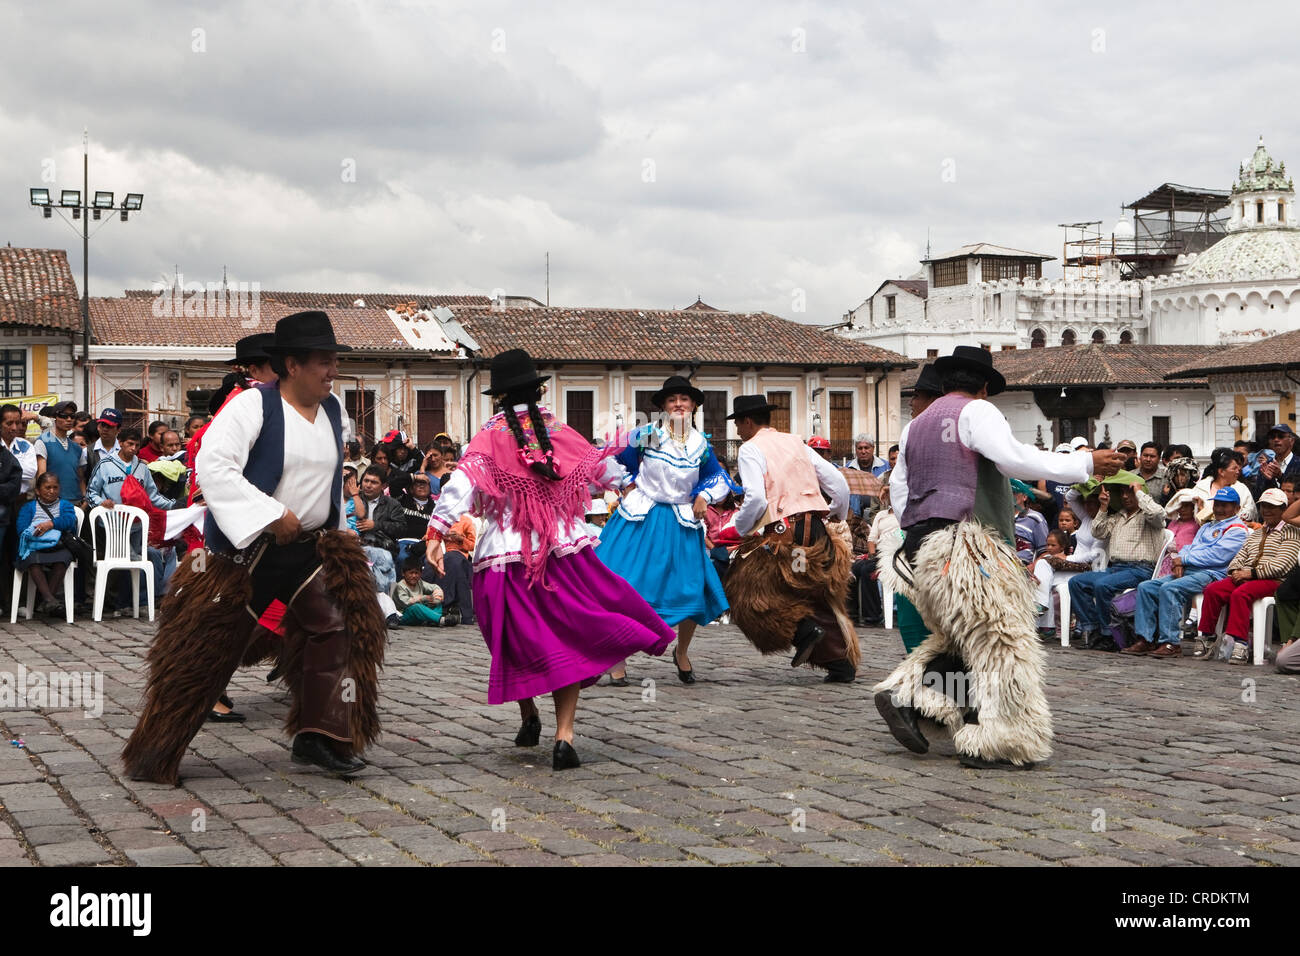 Grupos de baile de disfraces en la Plaza de San Francisco durante un domingo sin coches en el centro histórico de la ciudad de Quito, Ecuador Foto de stock